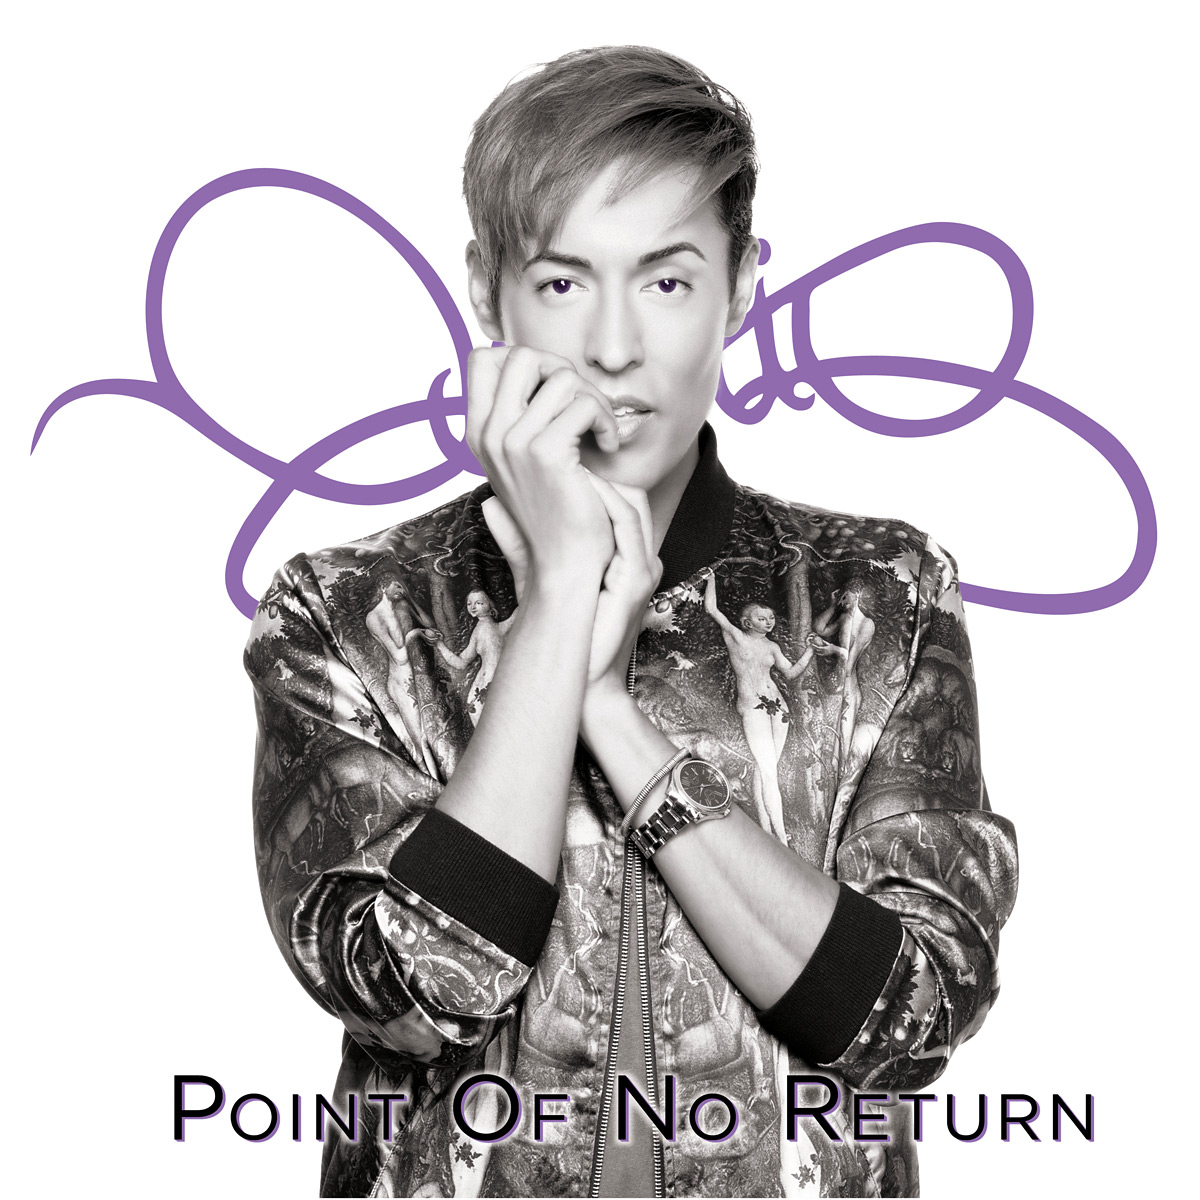 Get Dario's album: Point Of No Return